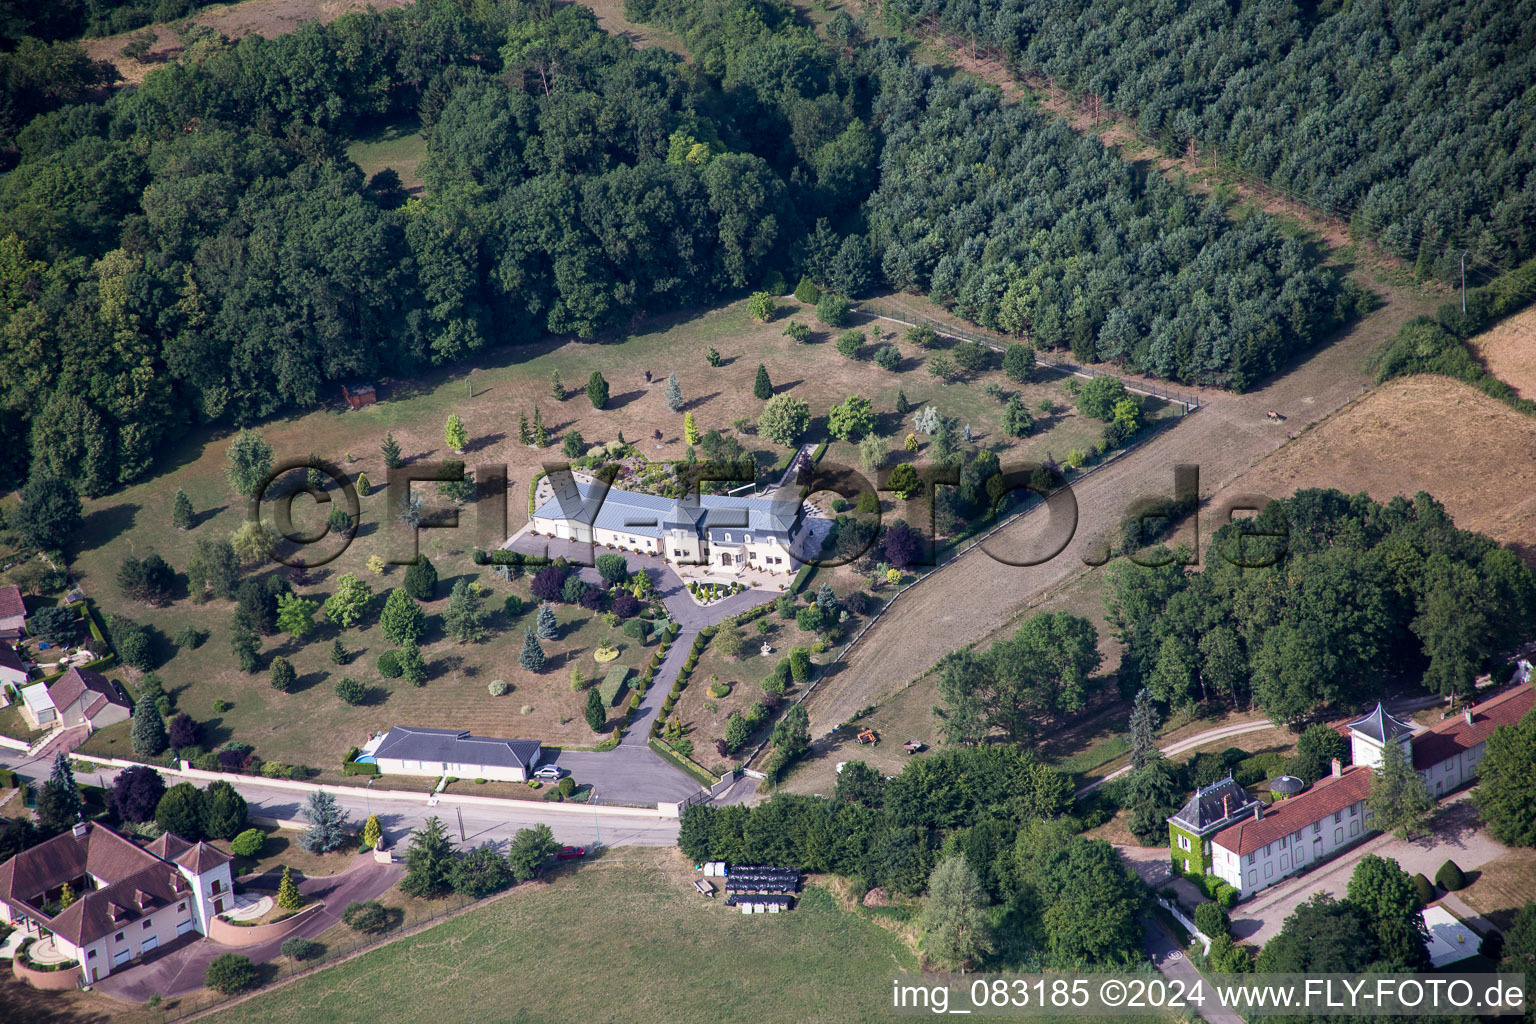 Luftbild von Palais bei Lunéville in Grand Est im Bundesland Meurthe-et-Moselle, Frankreich